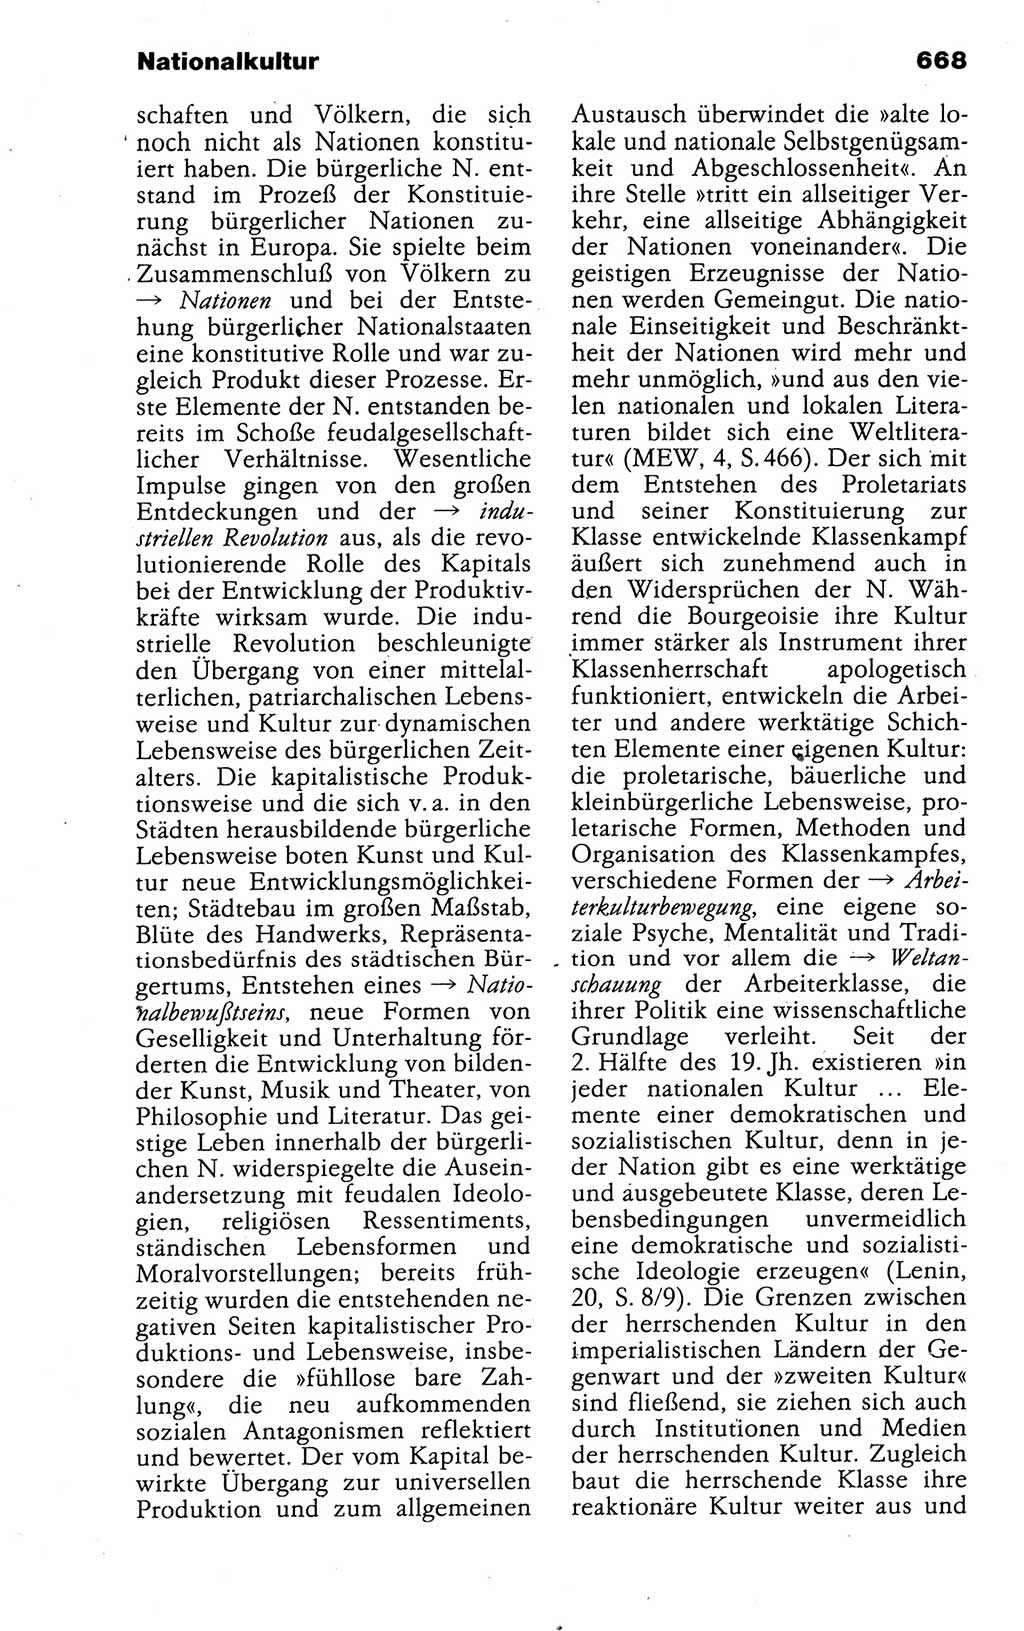 Kleines politisches Wörterbuch [Deutsche Demokratische Republik (DDR)] 1988, Seite 668 (Kl. pol. Wb. DDR 1988, S. 668)